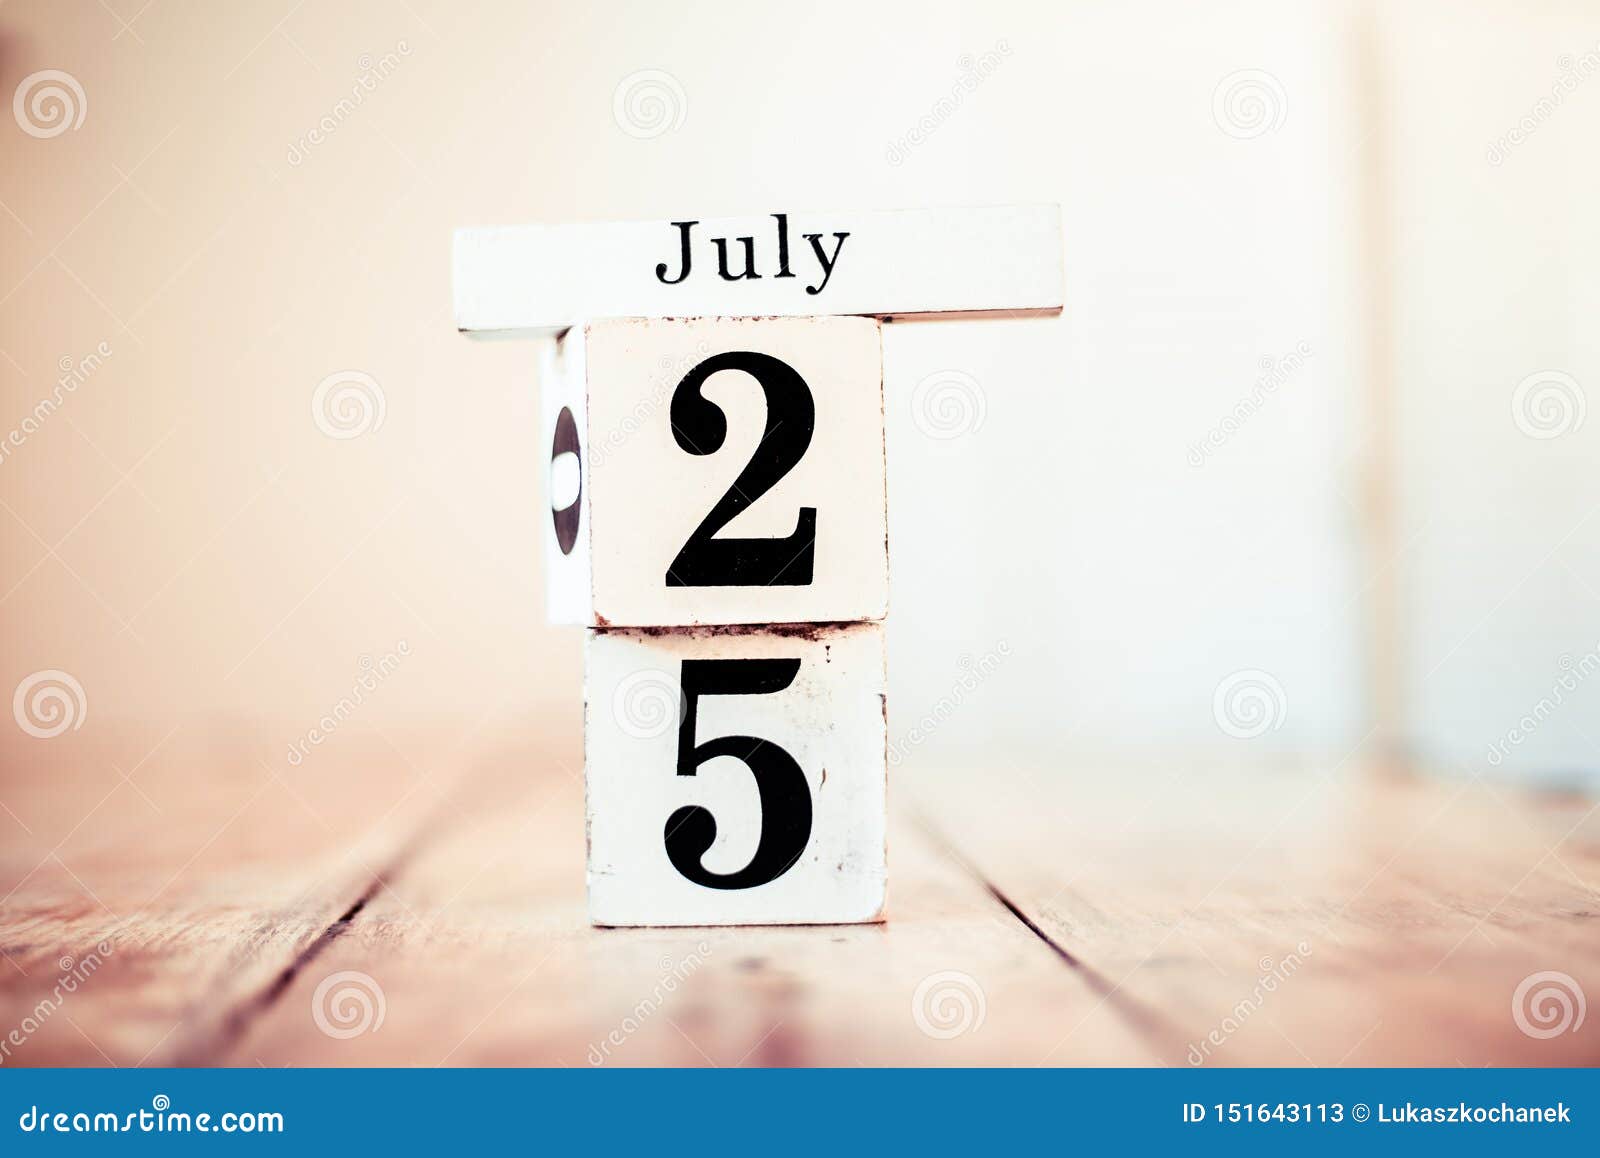 25 07 2023. 25 Июля. 25 July. 25 Июля календарь картинки. Картинки--25-ое.